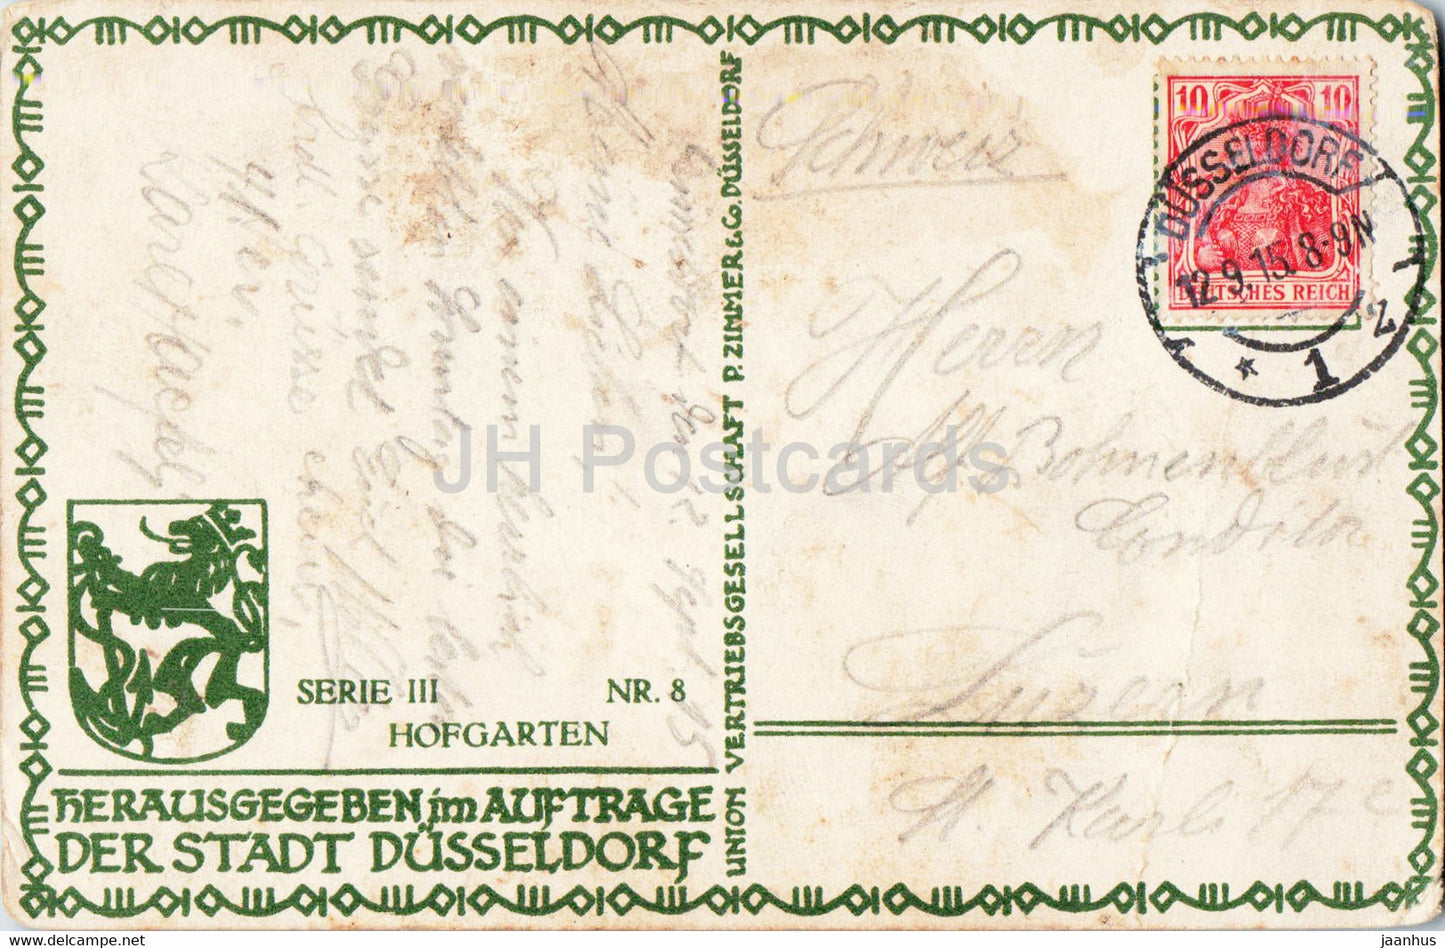 Dusseldorf - Hofgarten - old postcard - 1915 - Germany - used